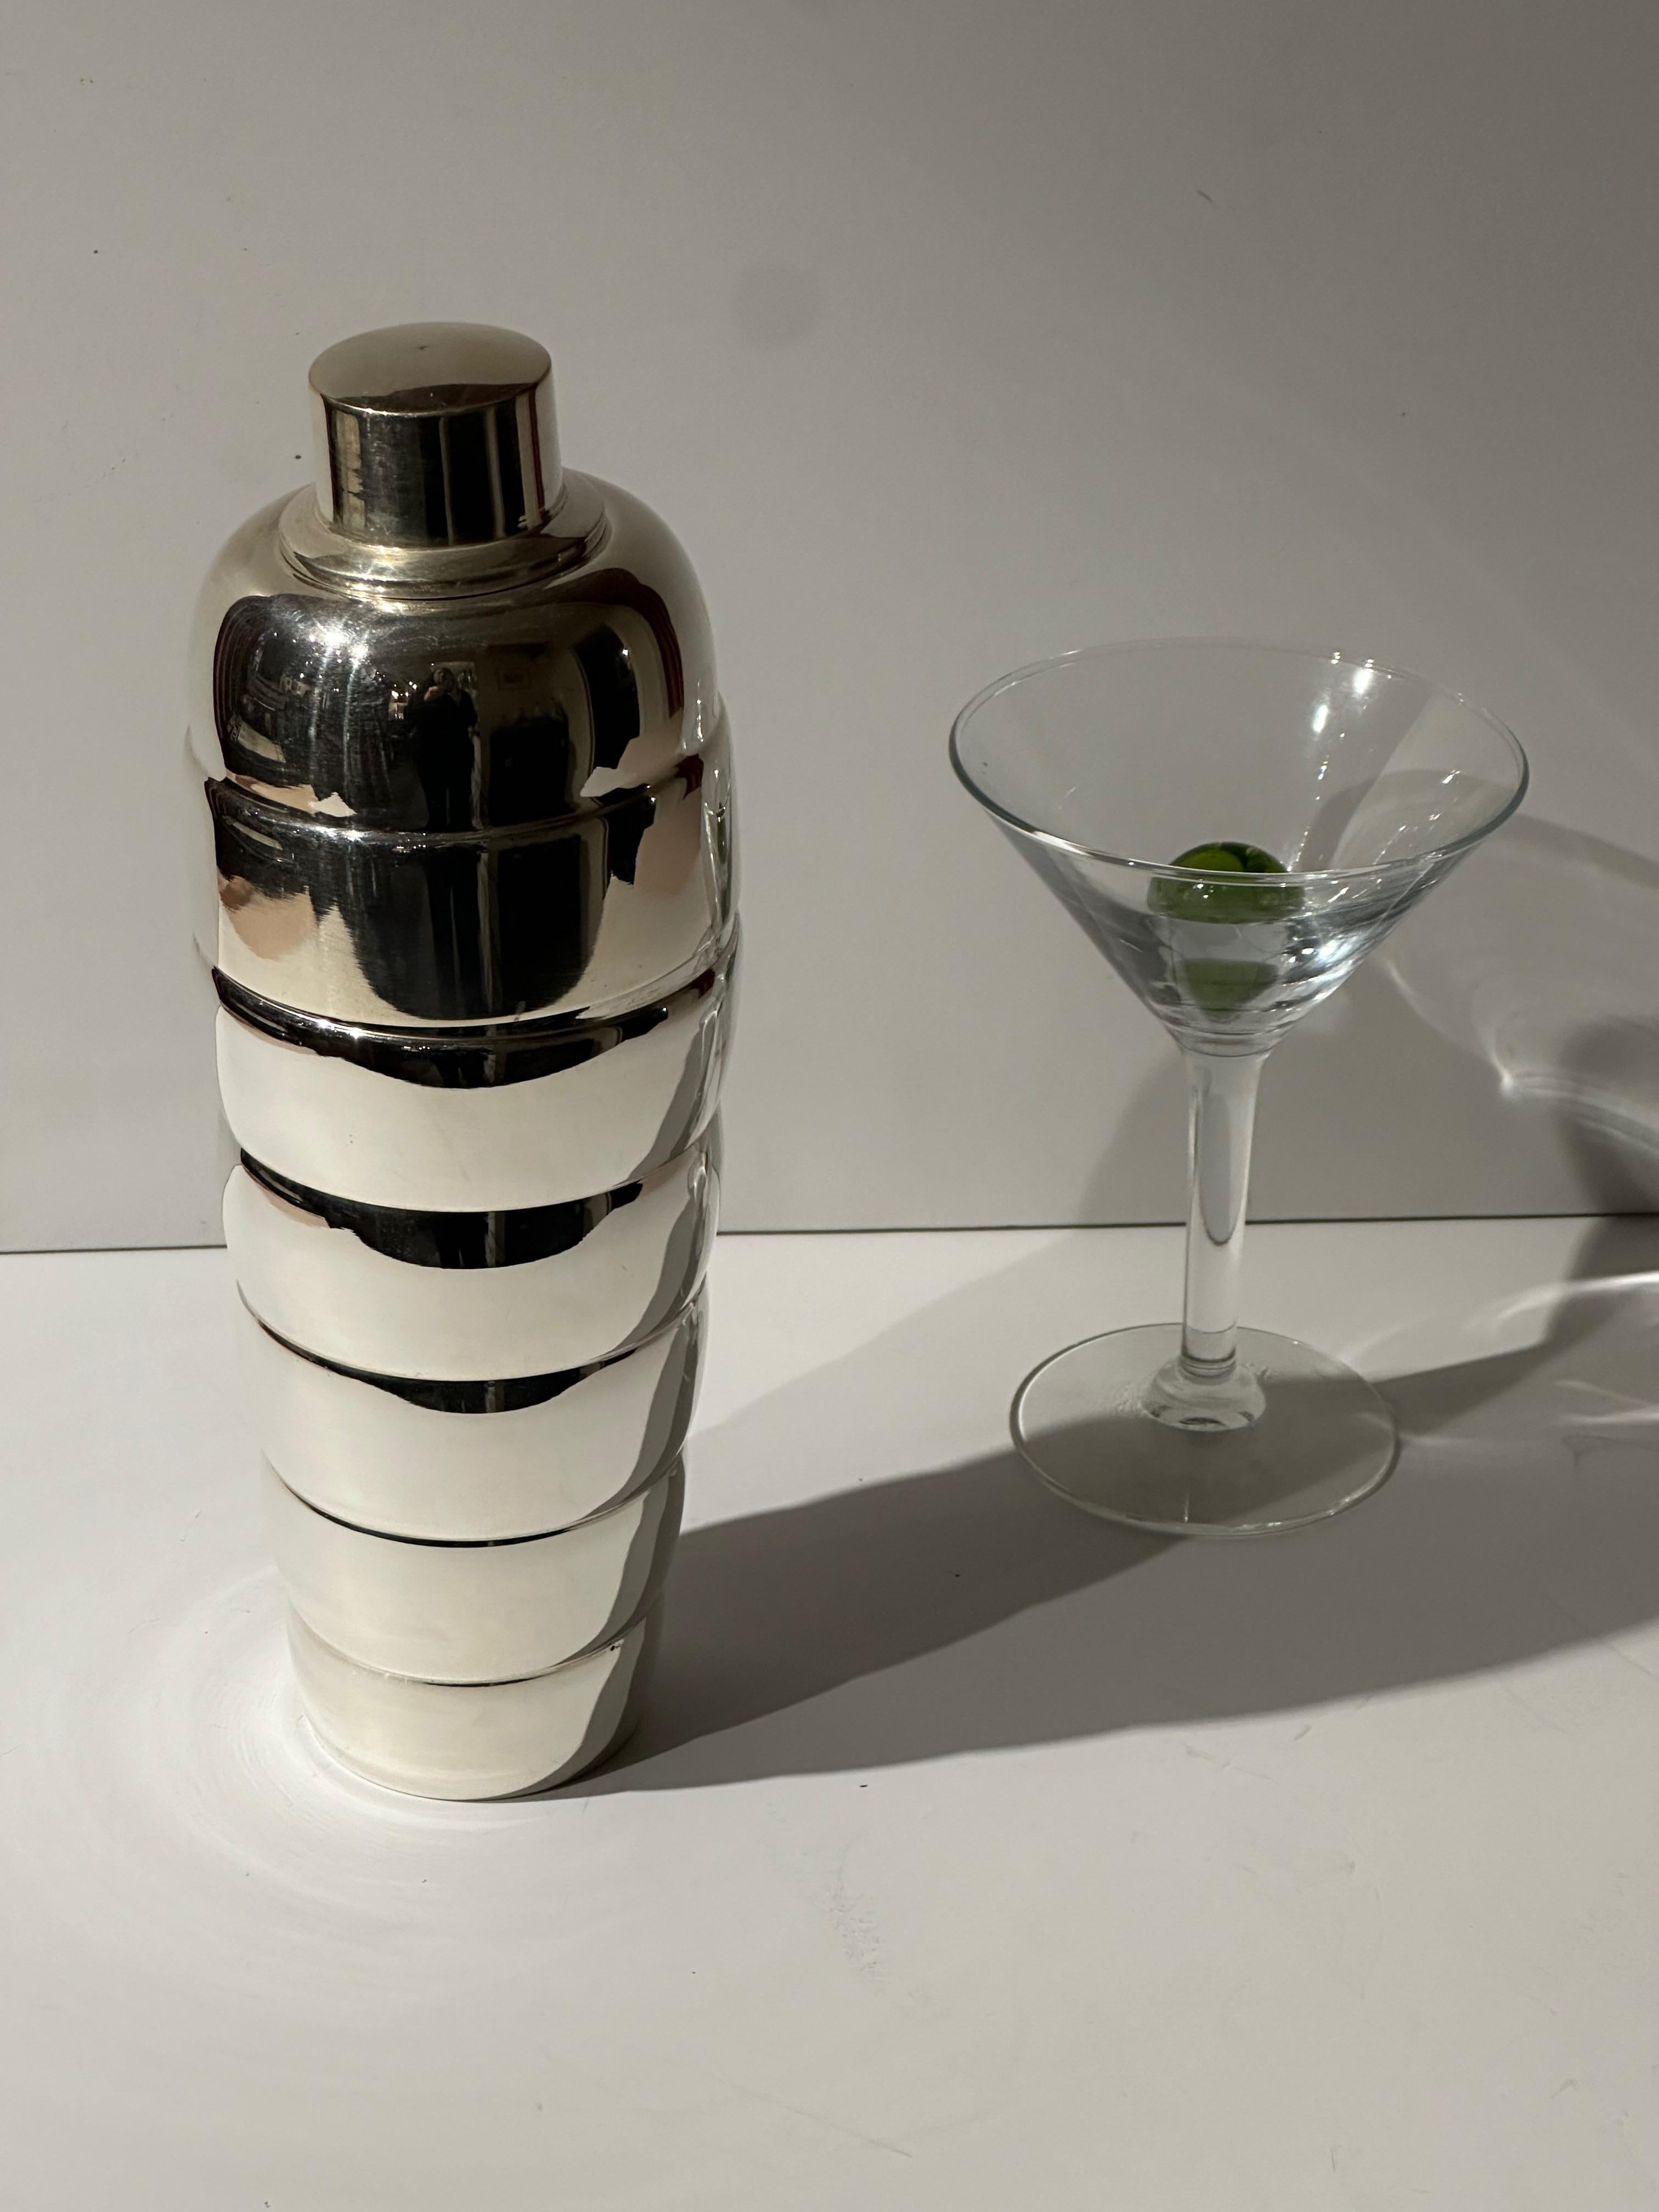 Ein Art-Deco-Cocktail-Shaker mit einer ungewöhnlichen Form - ein Stapel von blasigen und versilberten Formen  das an das 